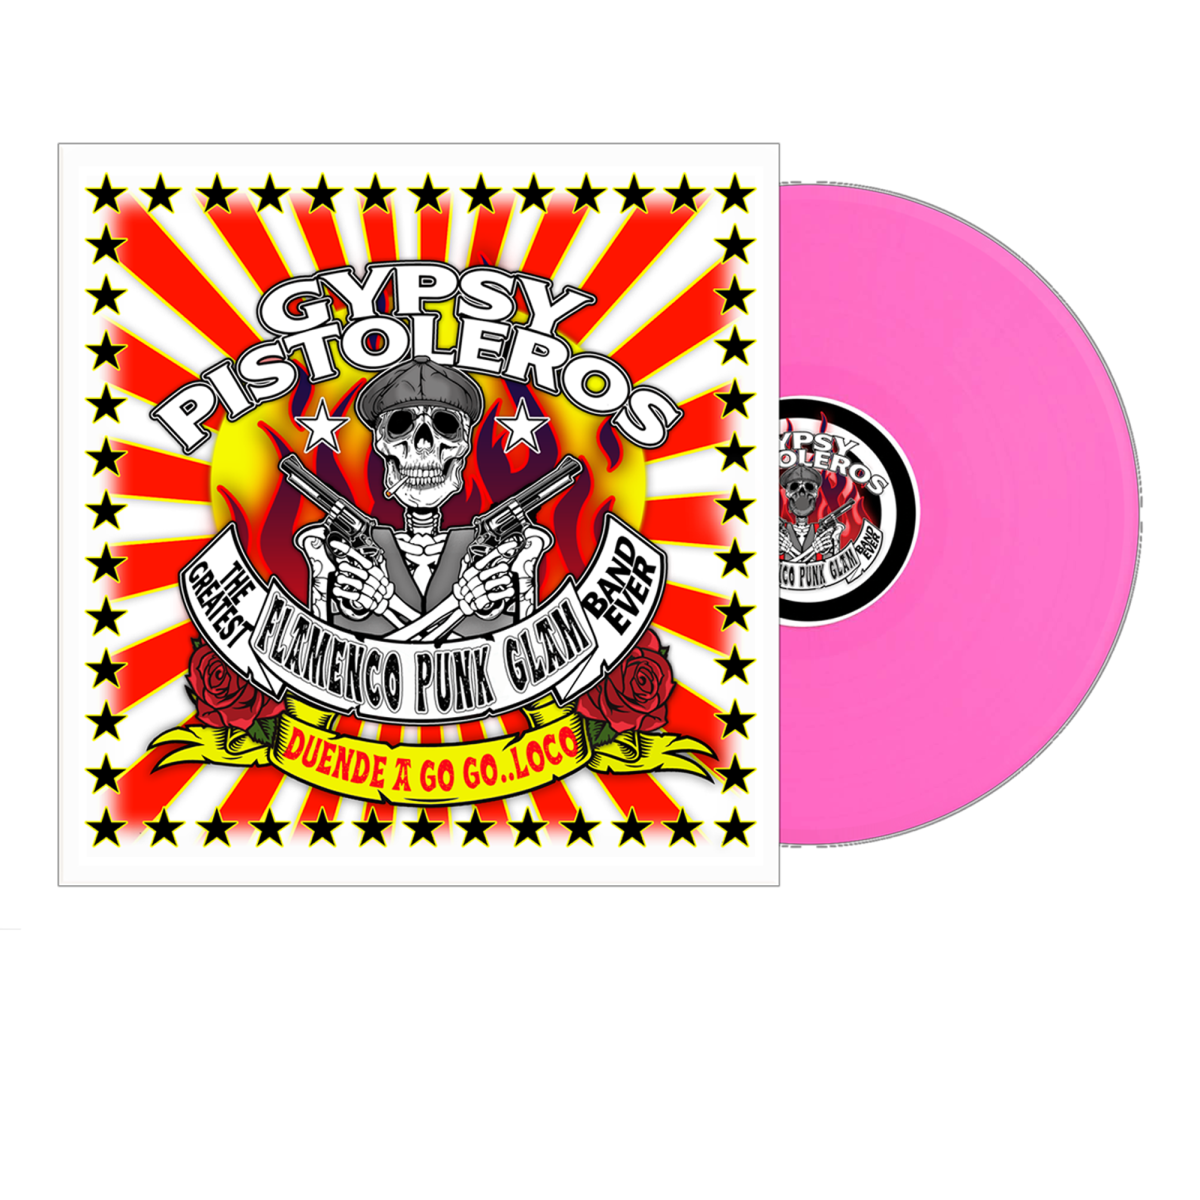 Gypsy Pistoleros "Duende a Go Go Loco" Pink Vinyl